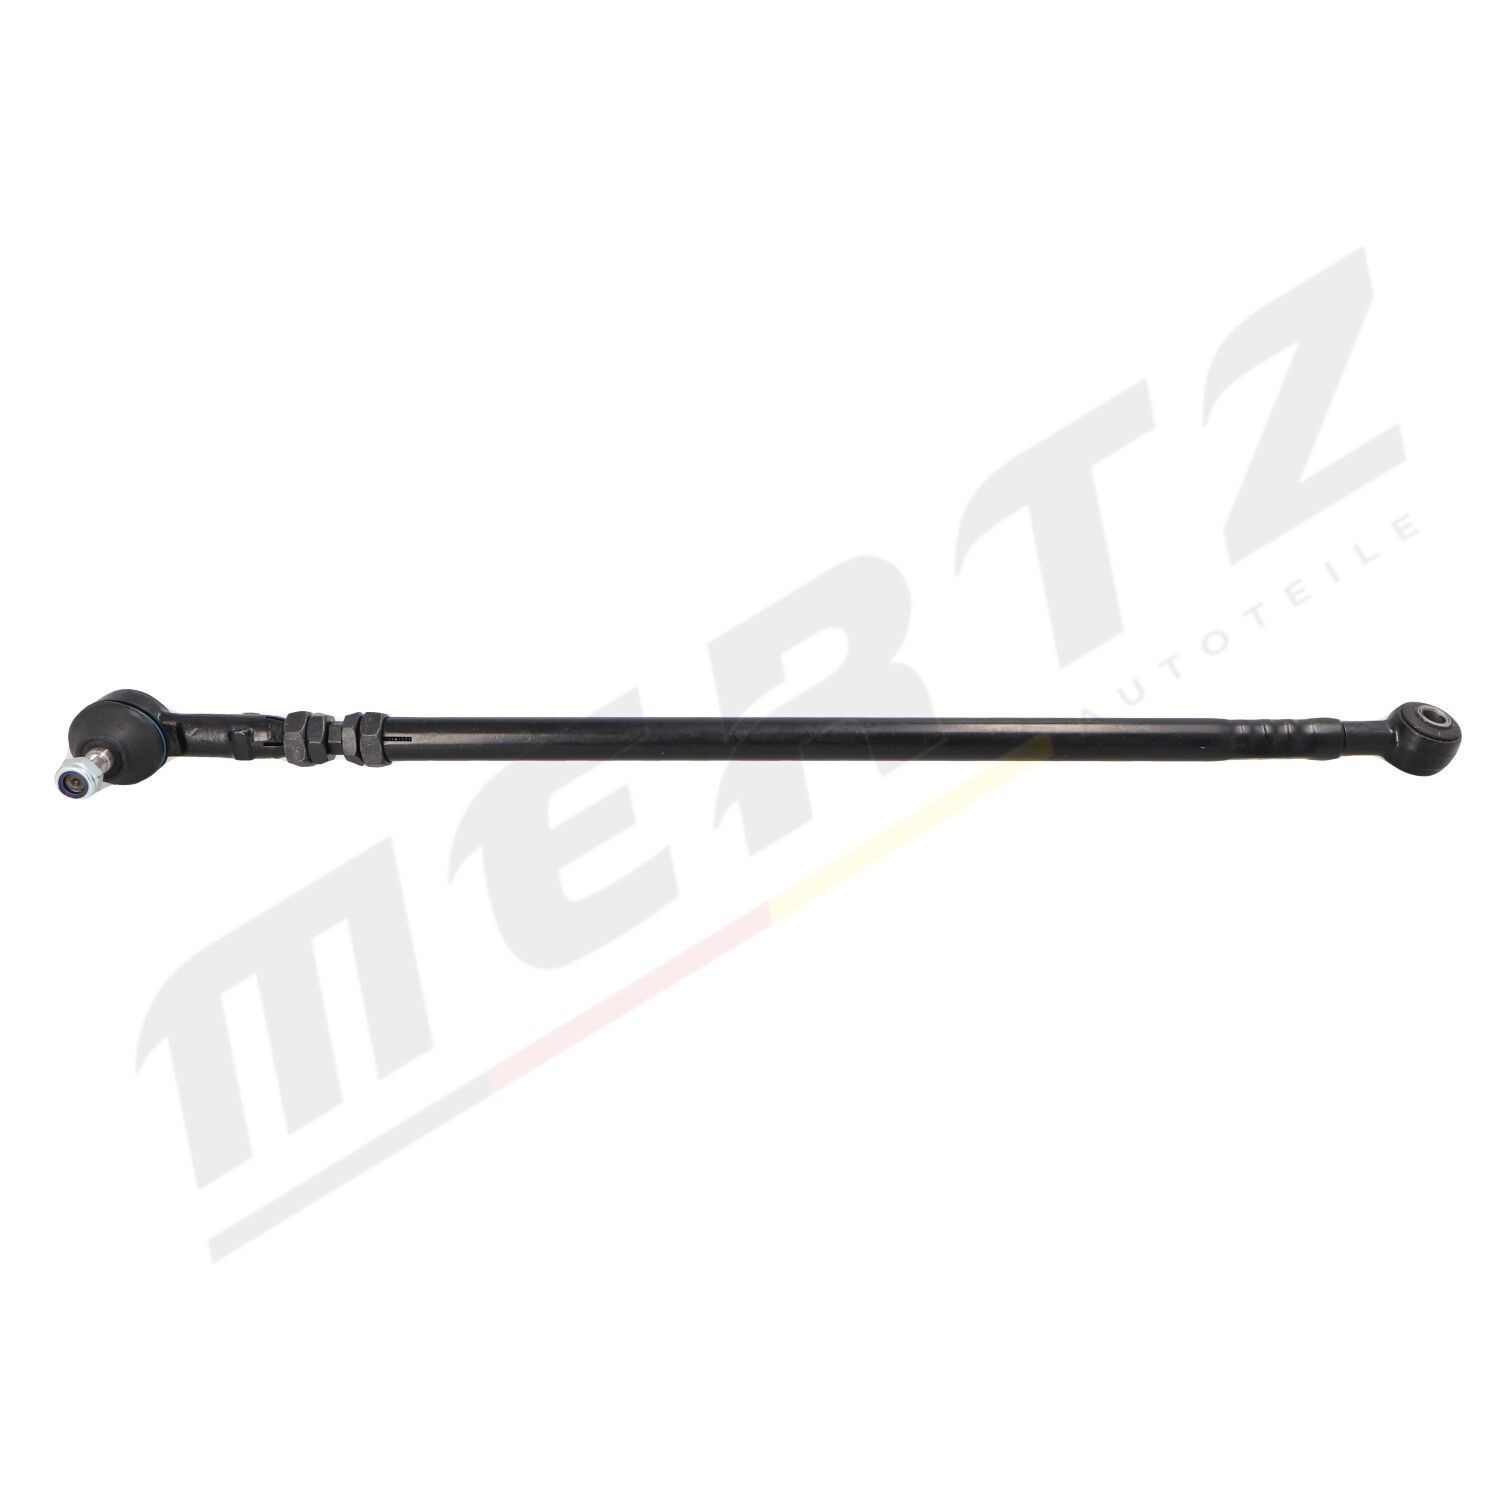 MERTZ M-S1060 Rod Assembly 811 419 801C